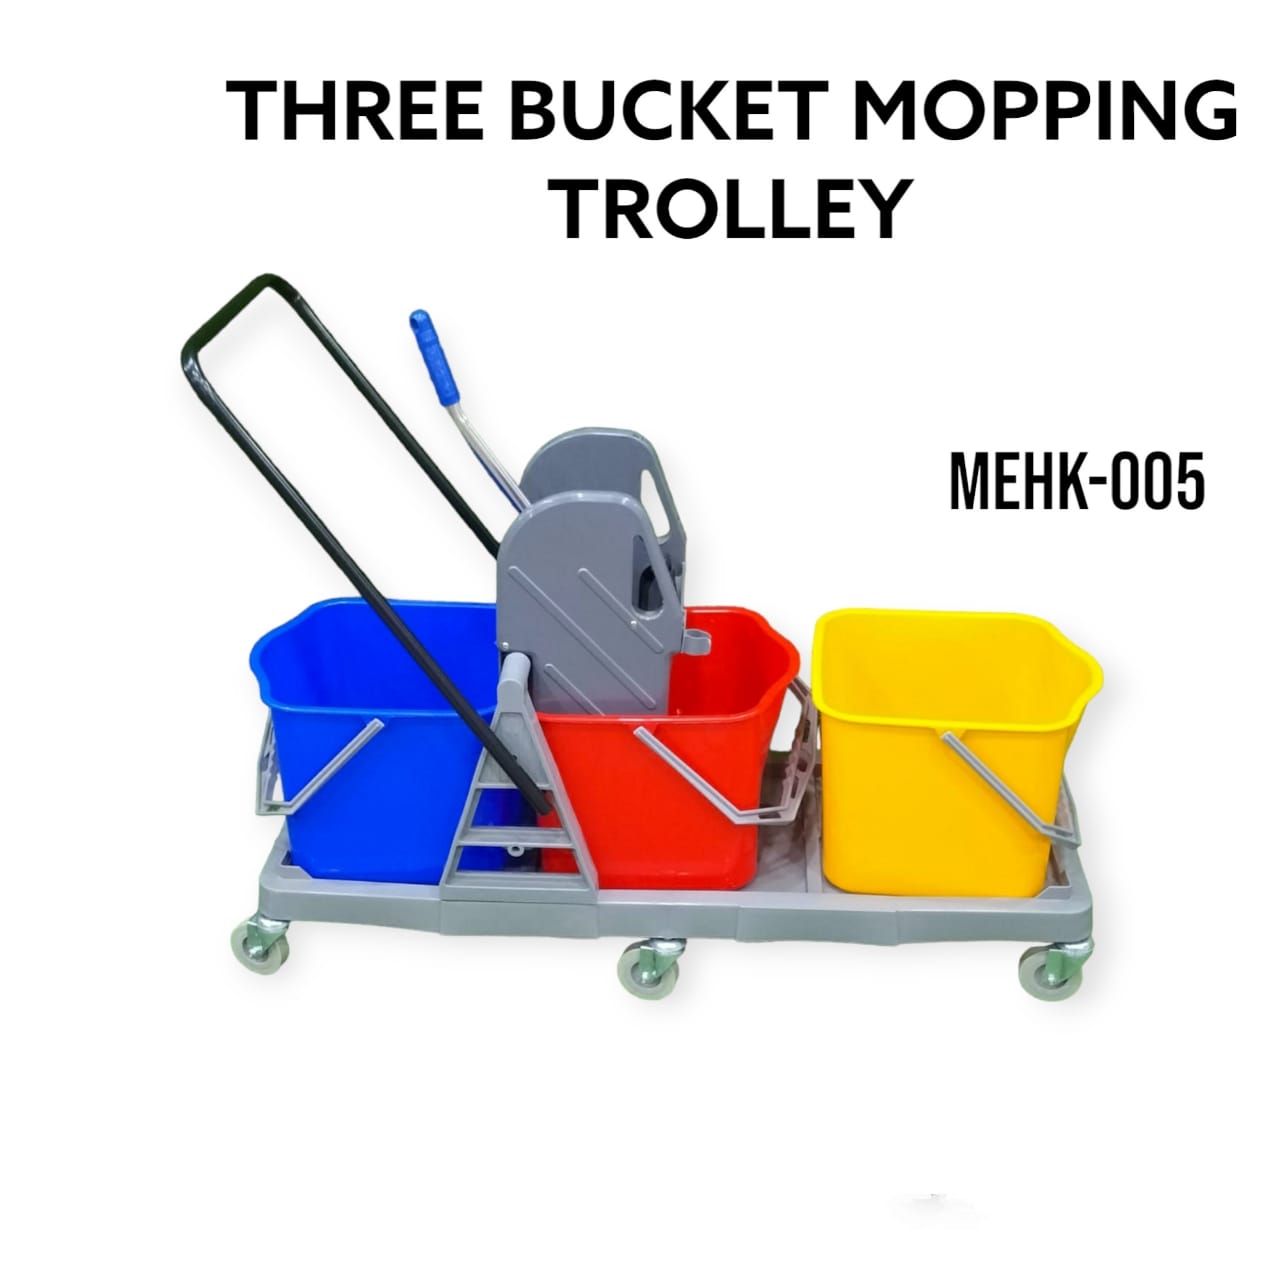 THREE BUCKET MOPPING TROLLEY